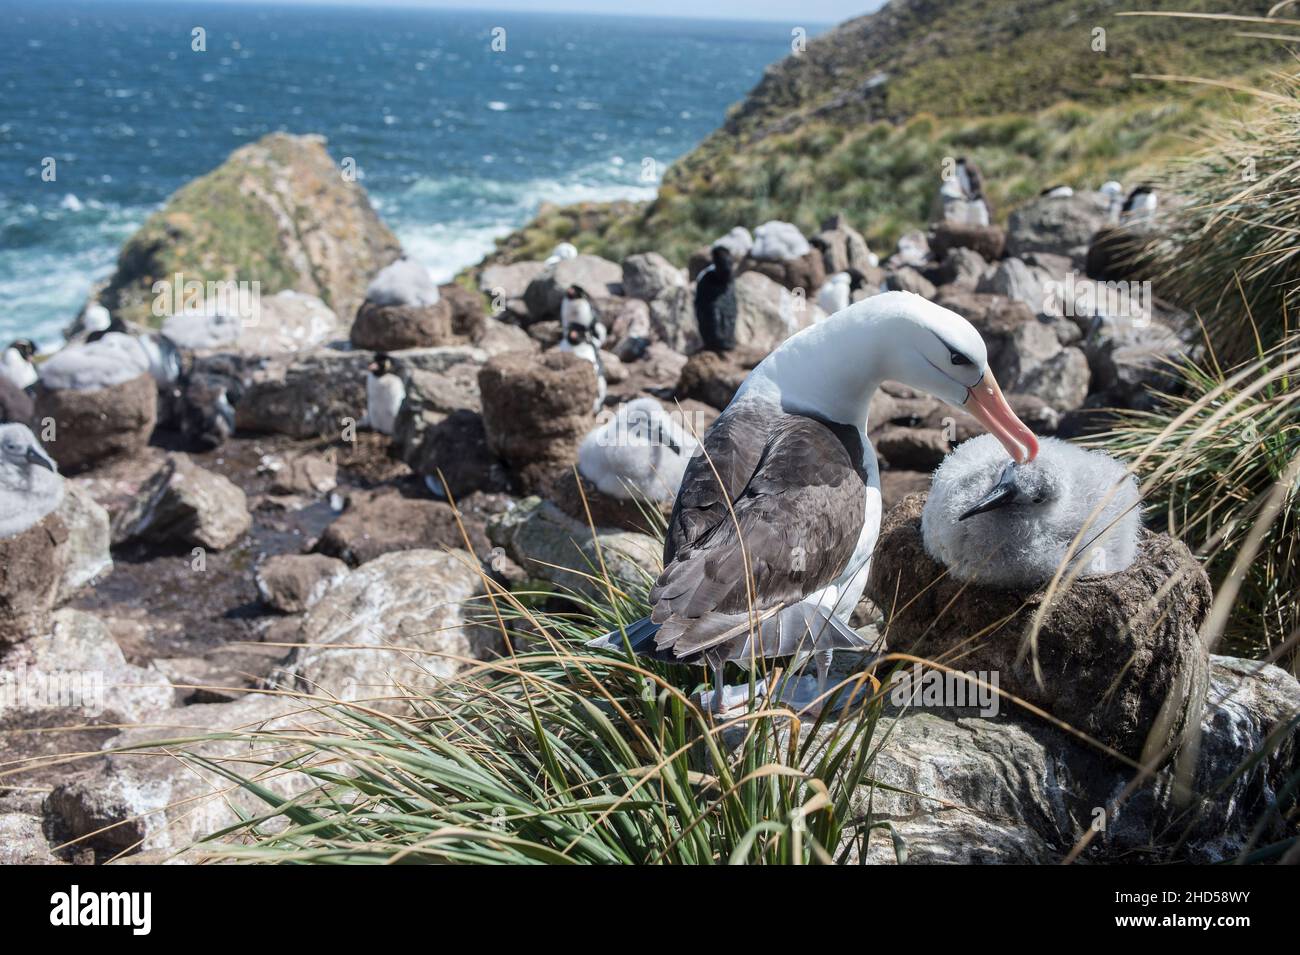 Schwarz gebräunter Albatross ( Thalassarche melanophris ) brütet Falklandinseln Südatlantik, Elternteil füttert Küken, West Point Insel Elternteil Pflege ch Stockfoto